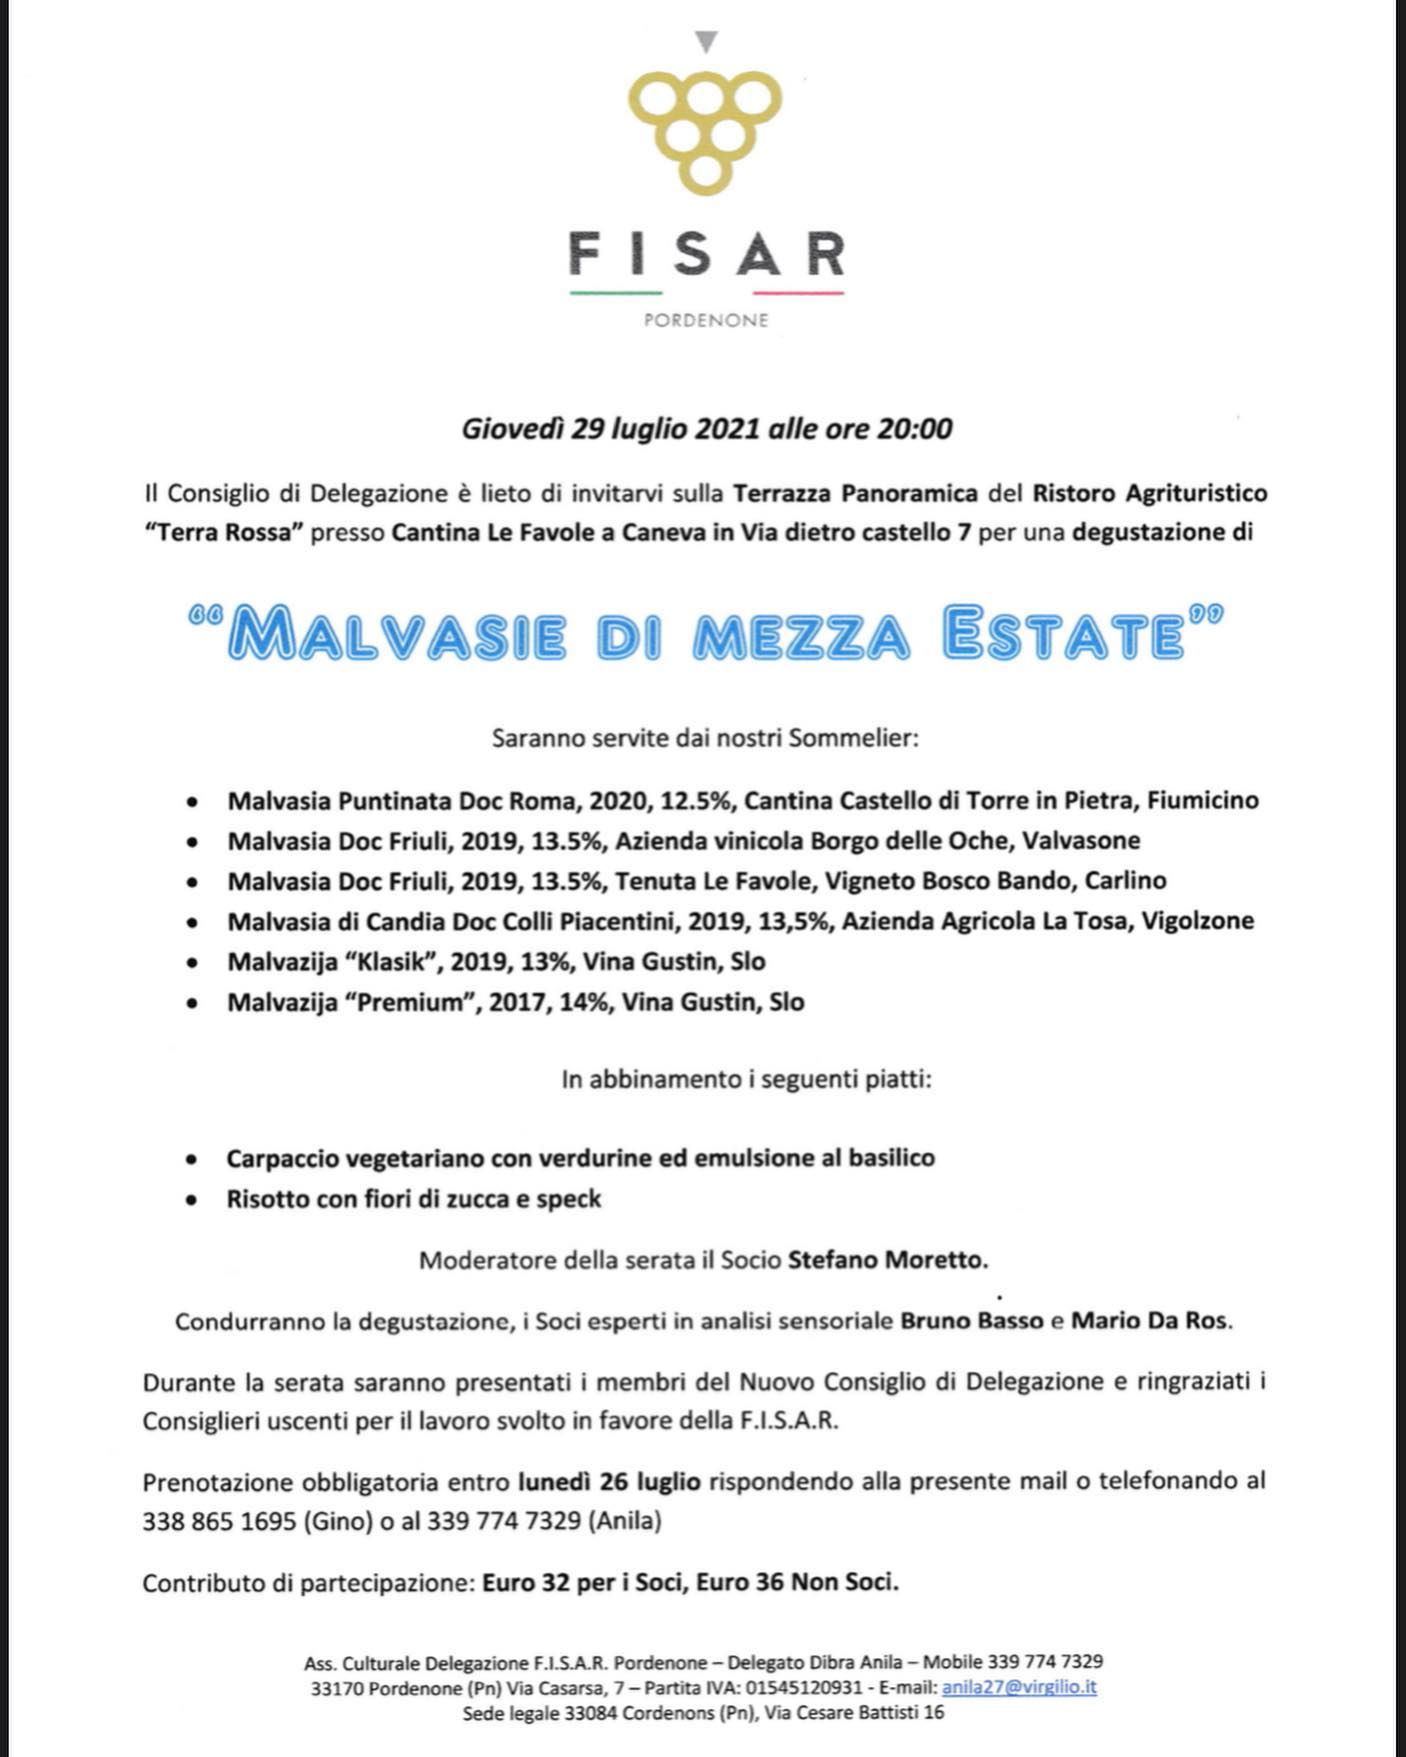 Evento Fisar Malvasie di Mezza Estate TerraRossa Caneva